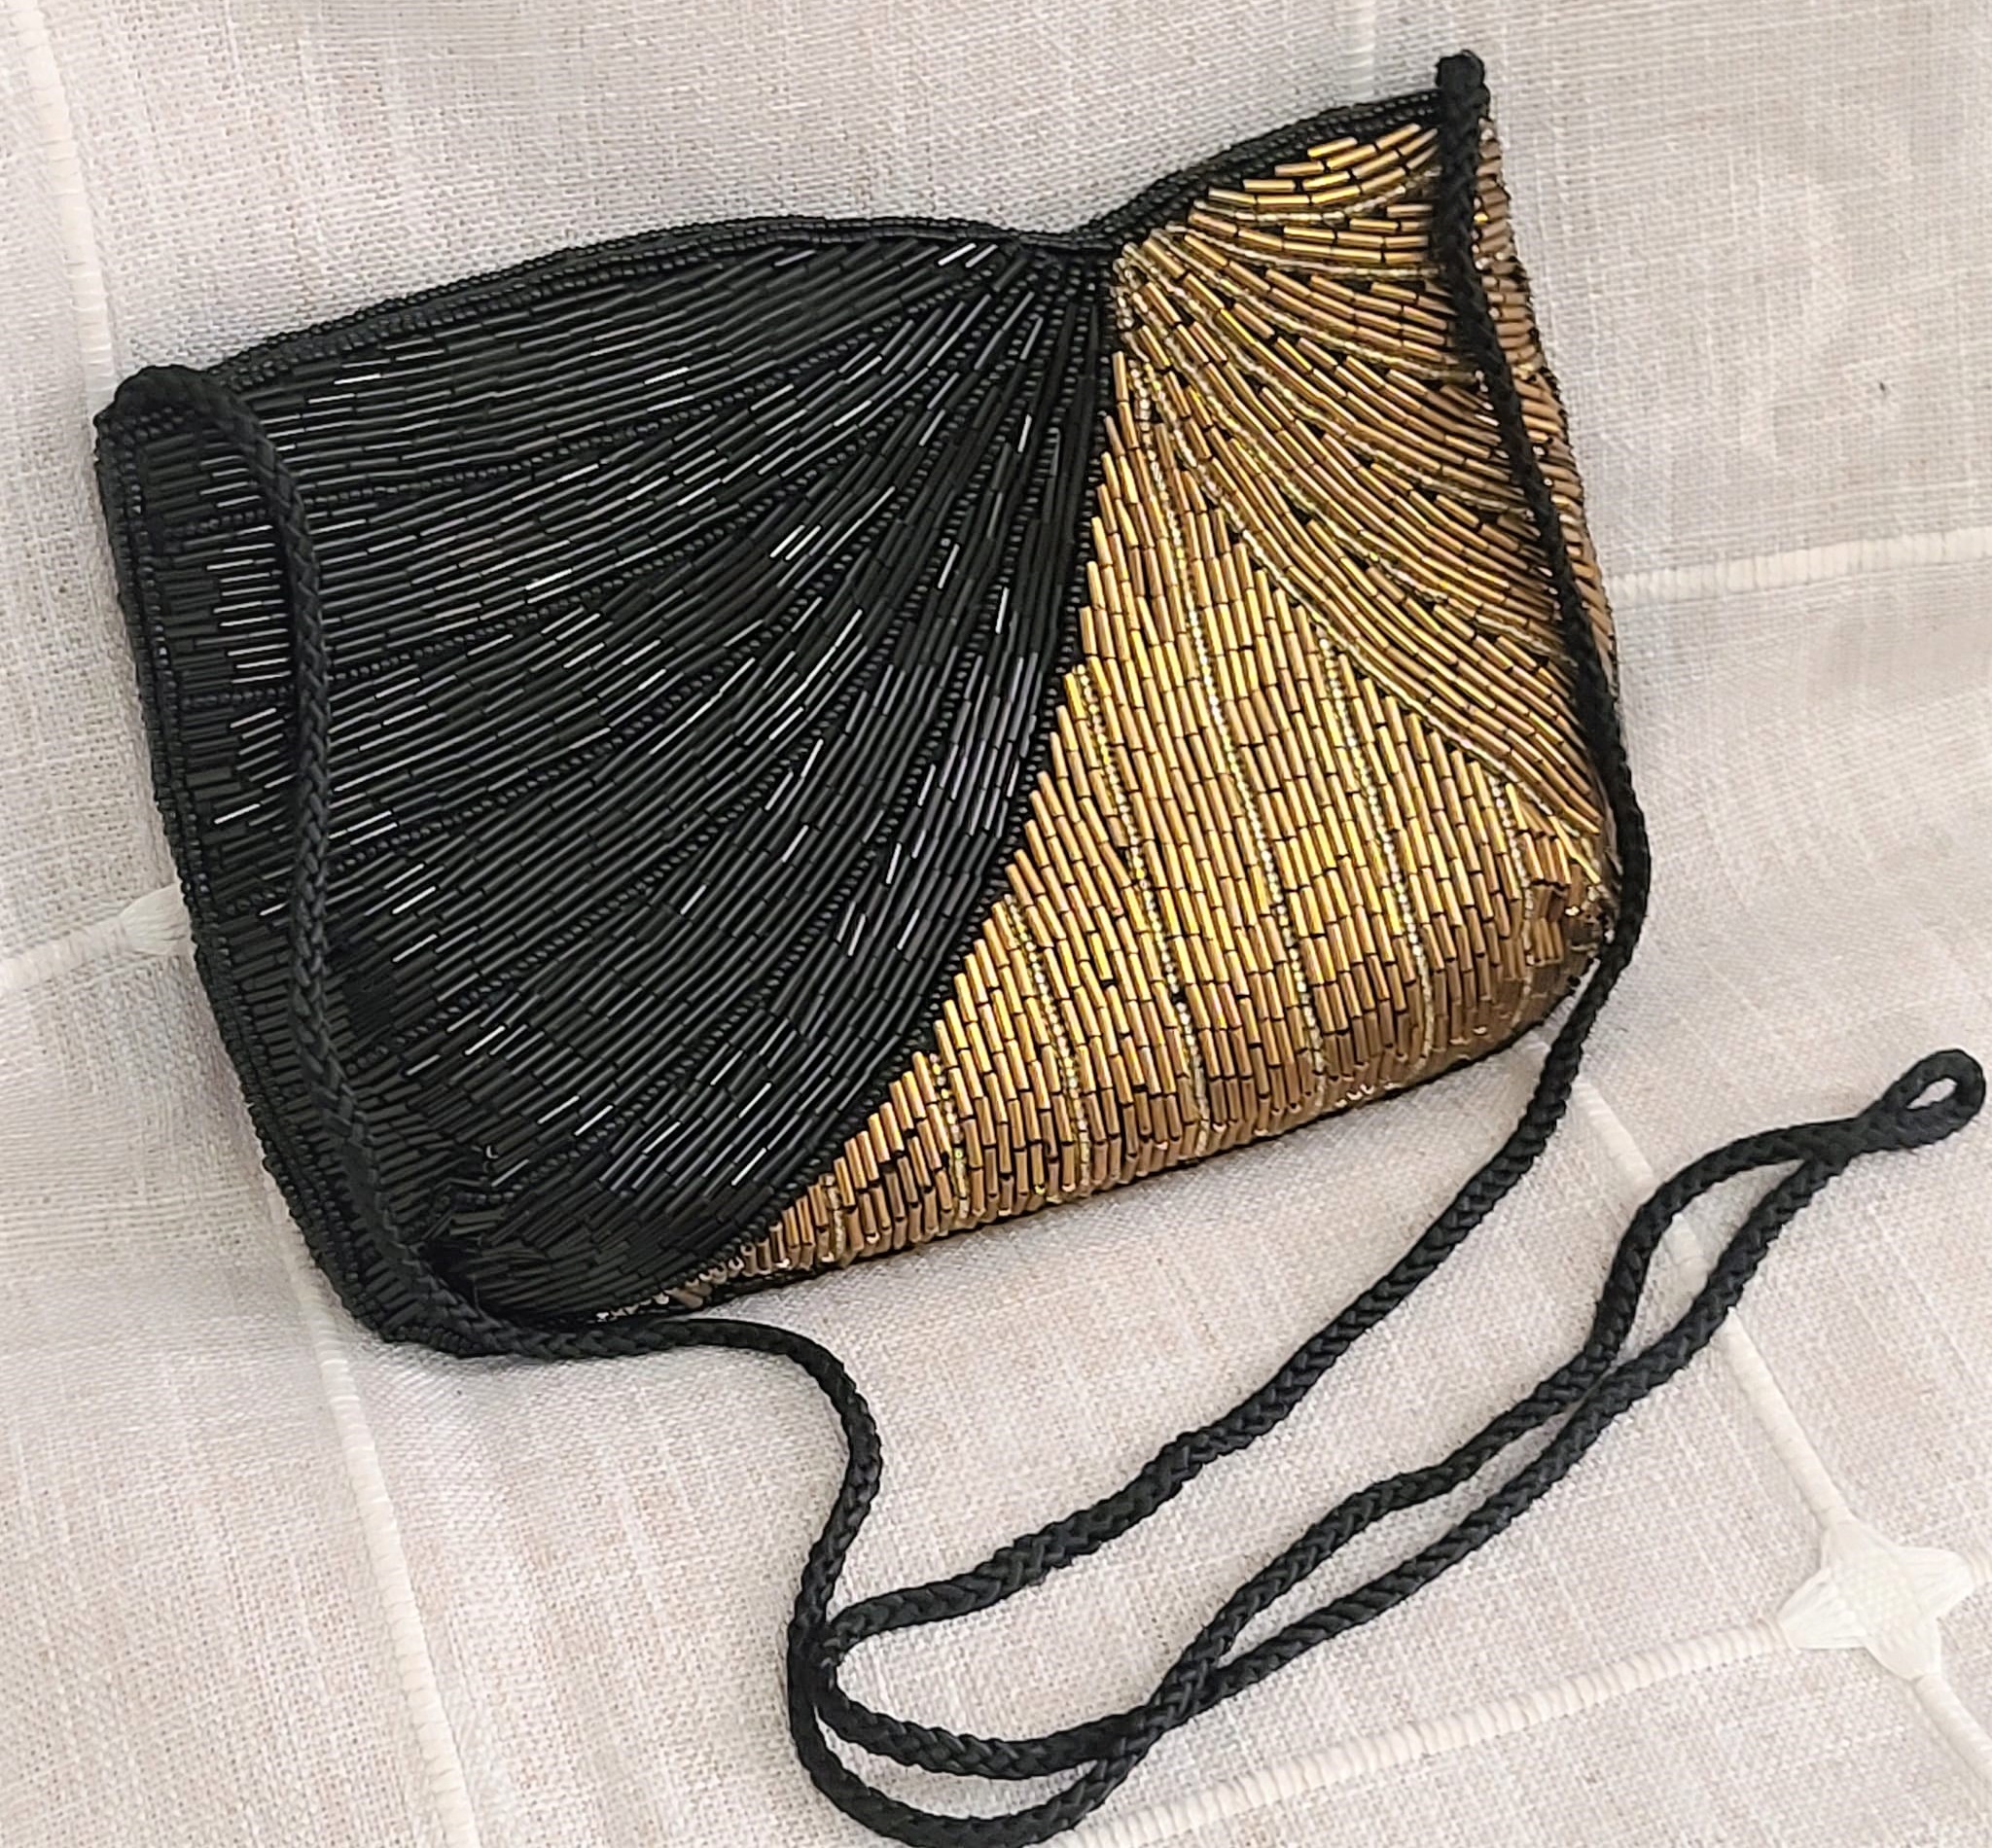 Vintage La Regale Gold Beaded Purse/Handbag